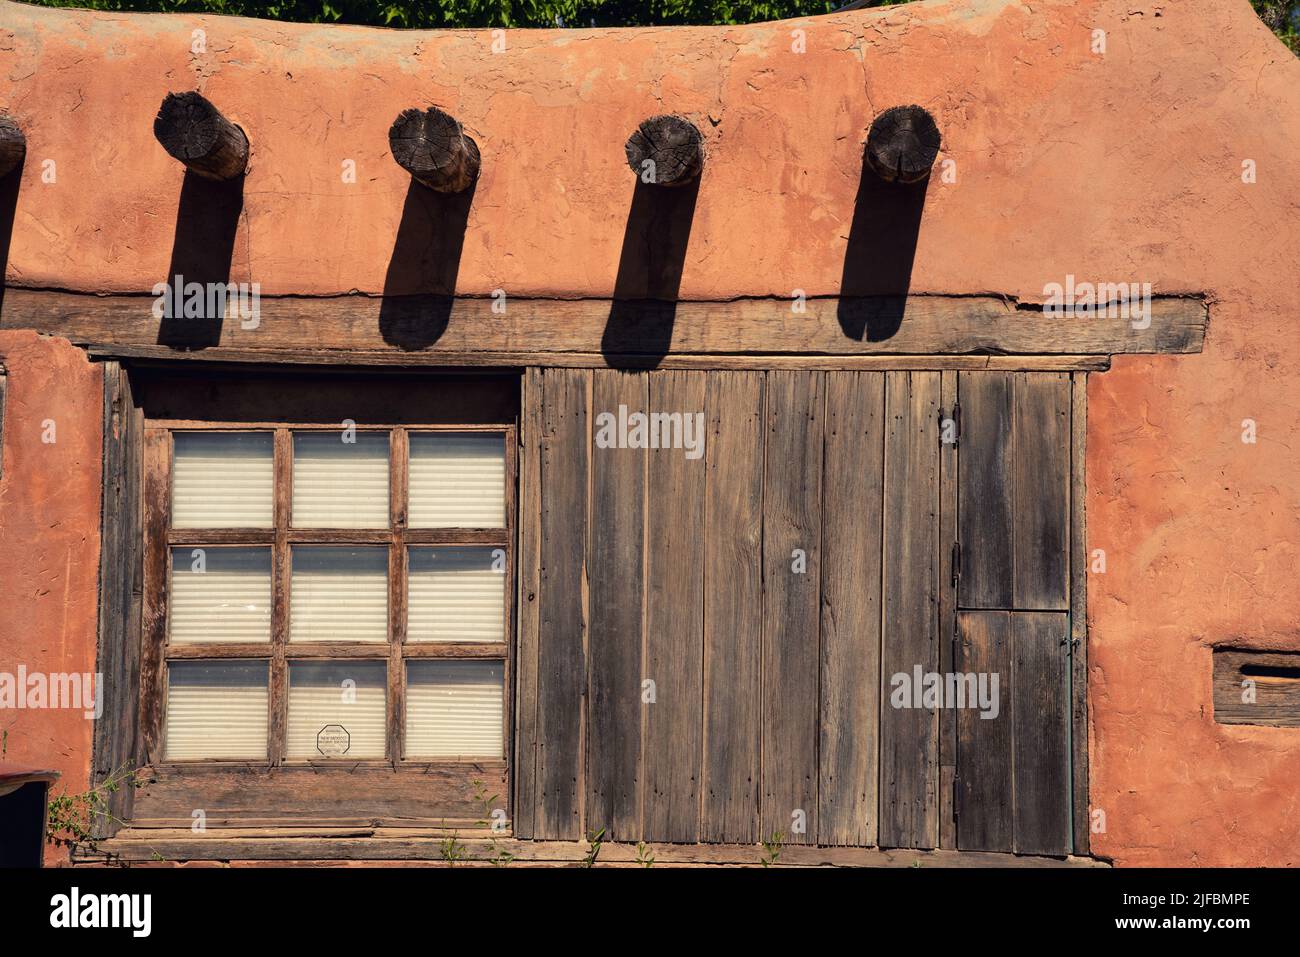 Exterior Pared de adobe marrón rojizo de una casa de estilo territorial, con vigas que sobresalen y ventanas panizadas con marco de madera en Santa Fe, Nuevo México. Foto de stock